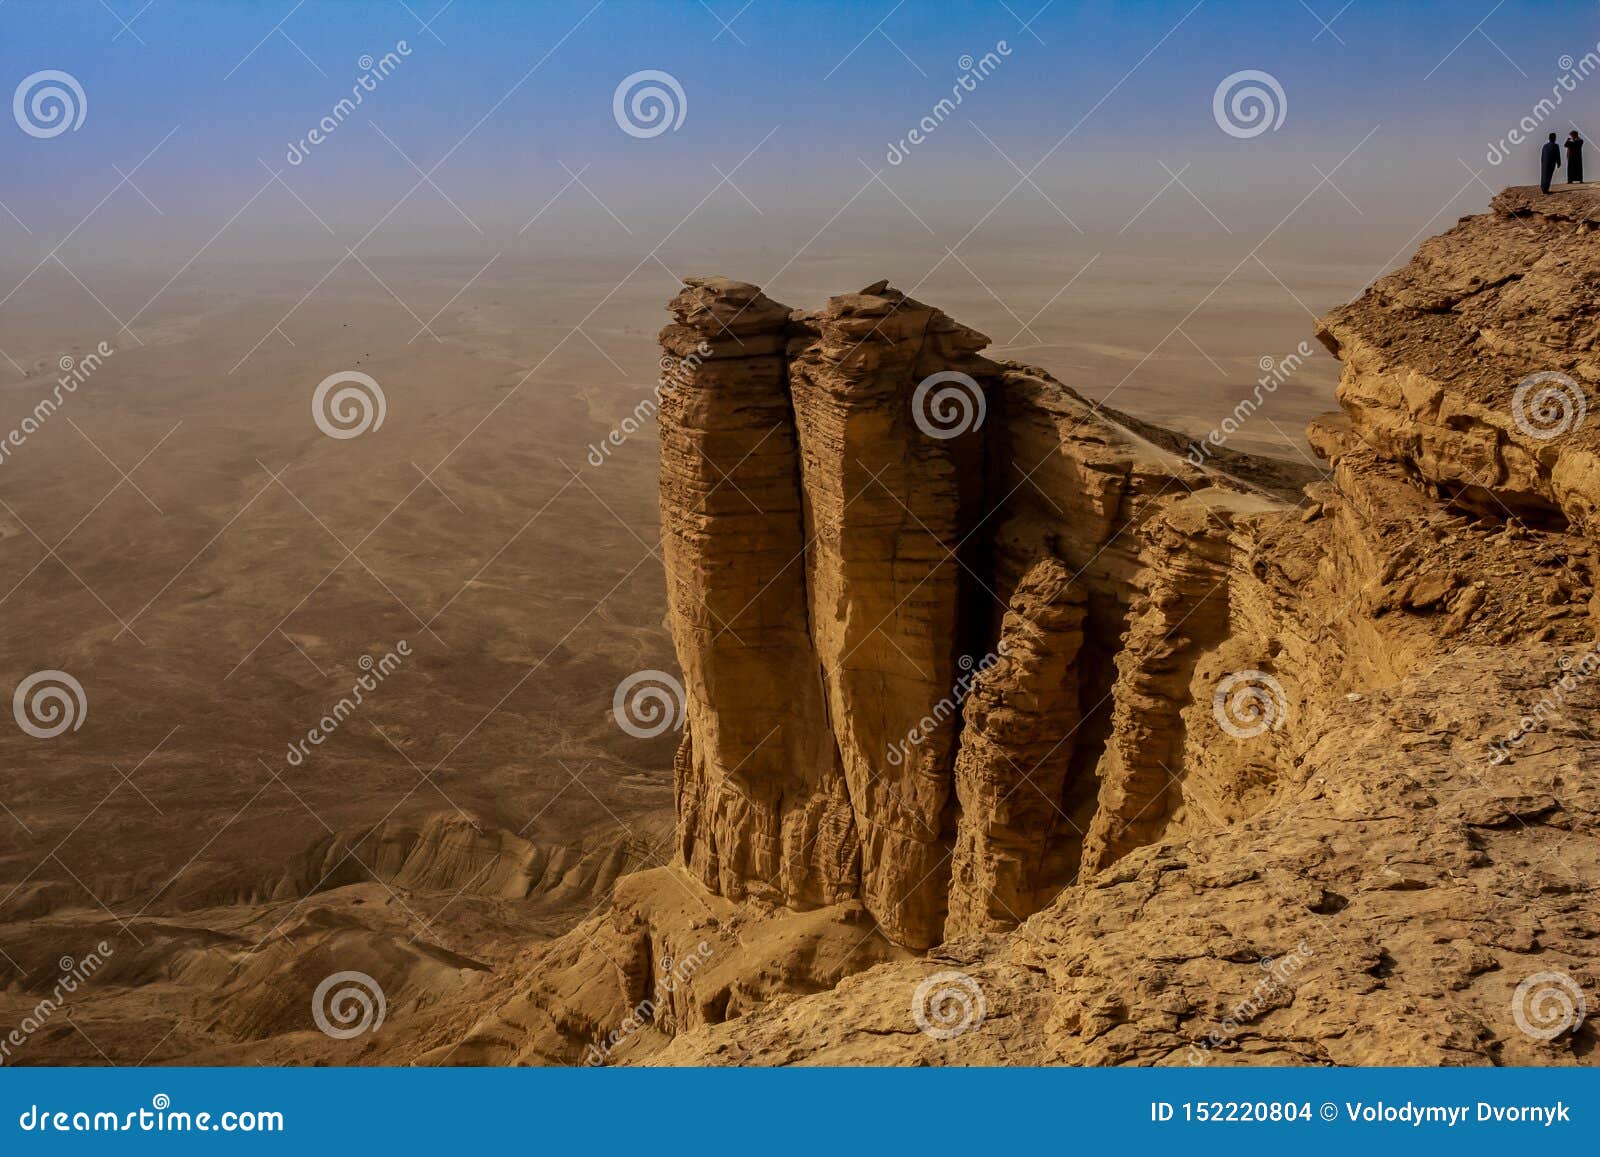 edge of the world, a popular tourist destination near riyadh, saudi arabia